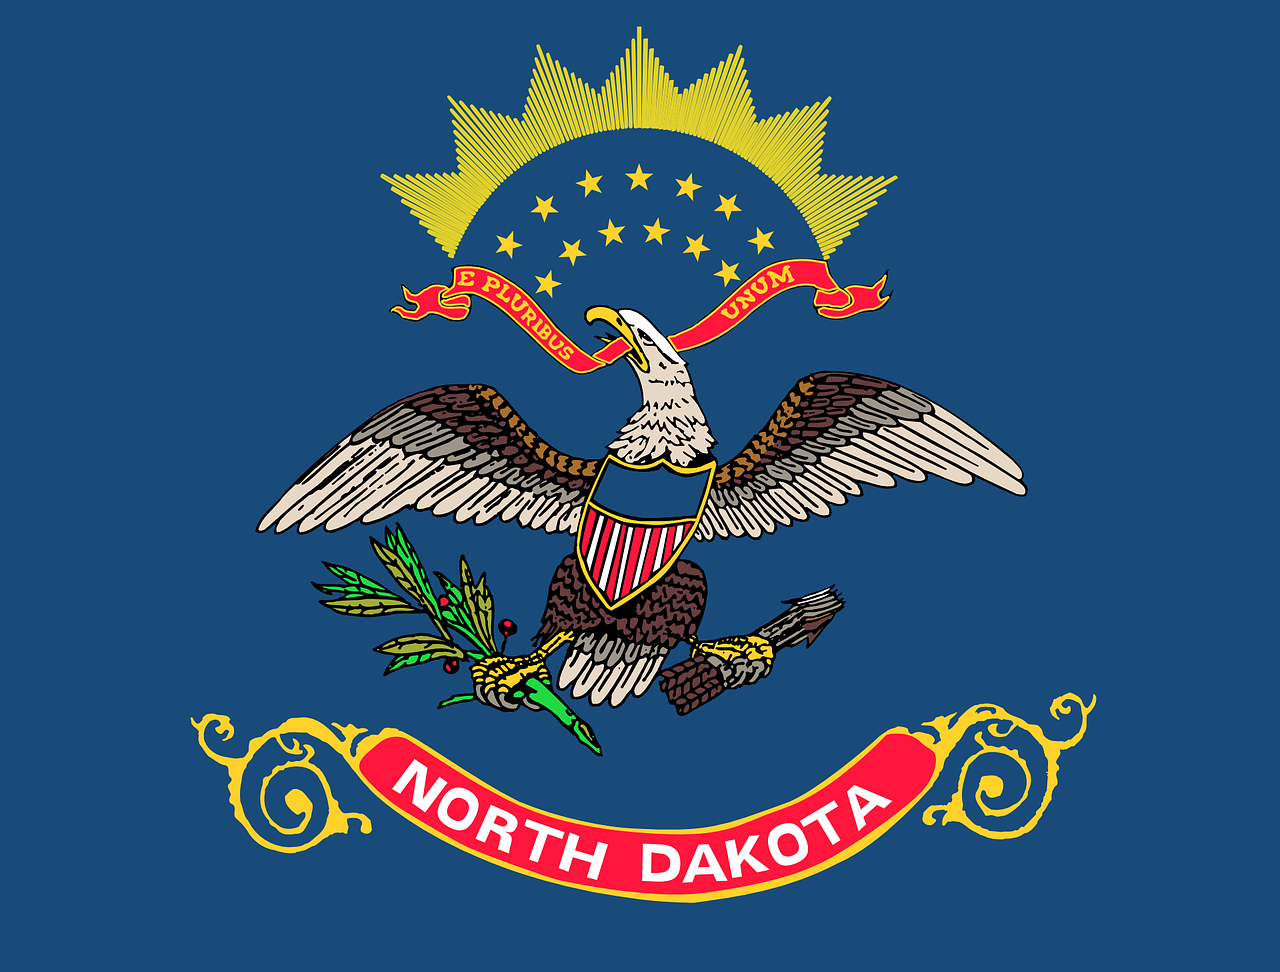 Gesetz zum Verbot RNA-Impfungen in North Dakota in Vorbereitung